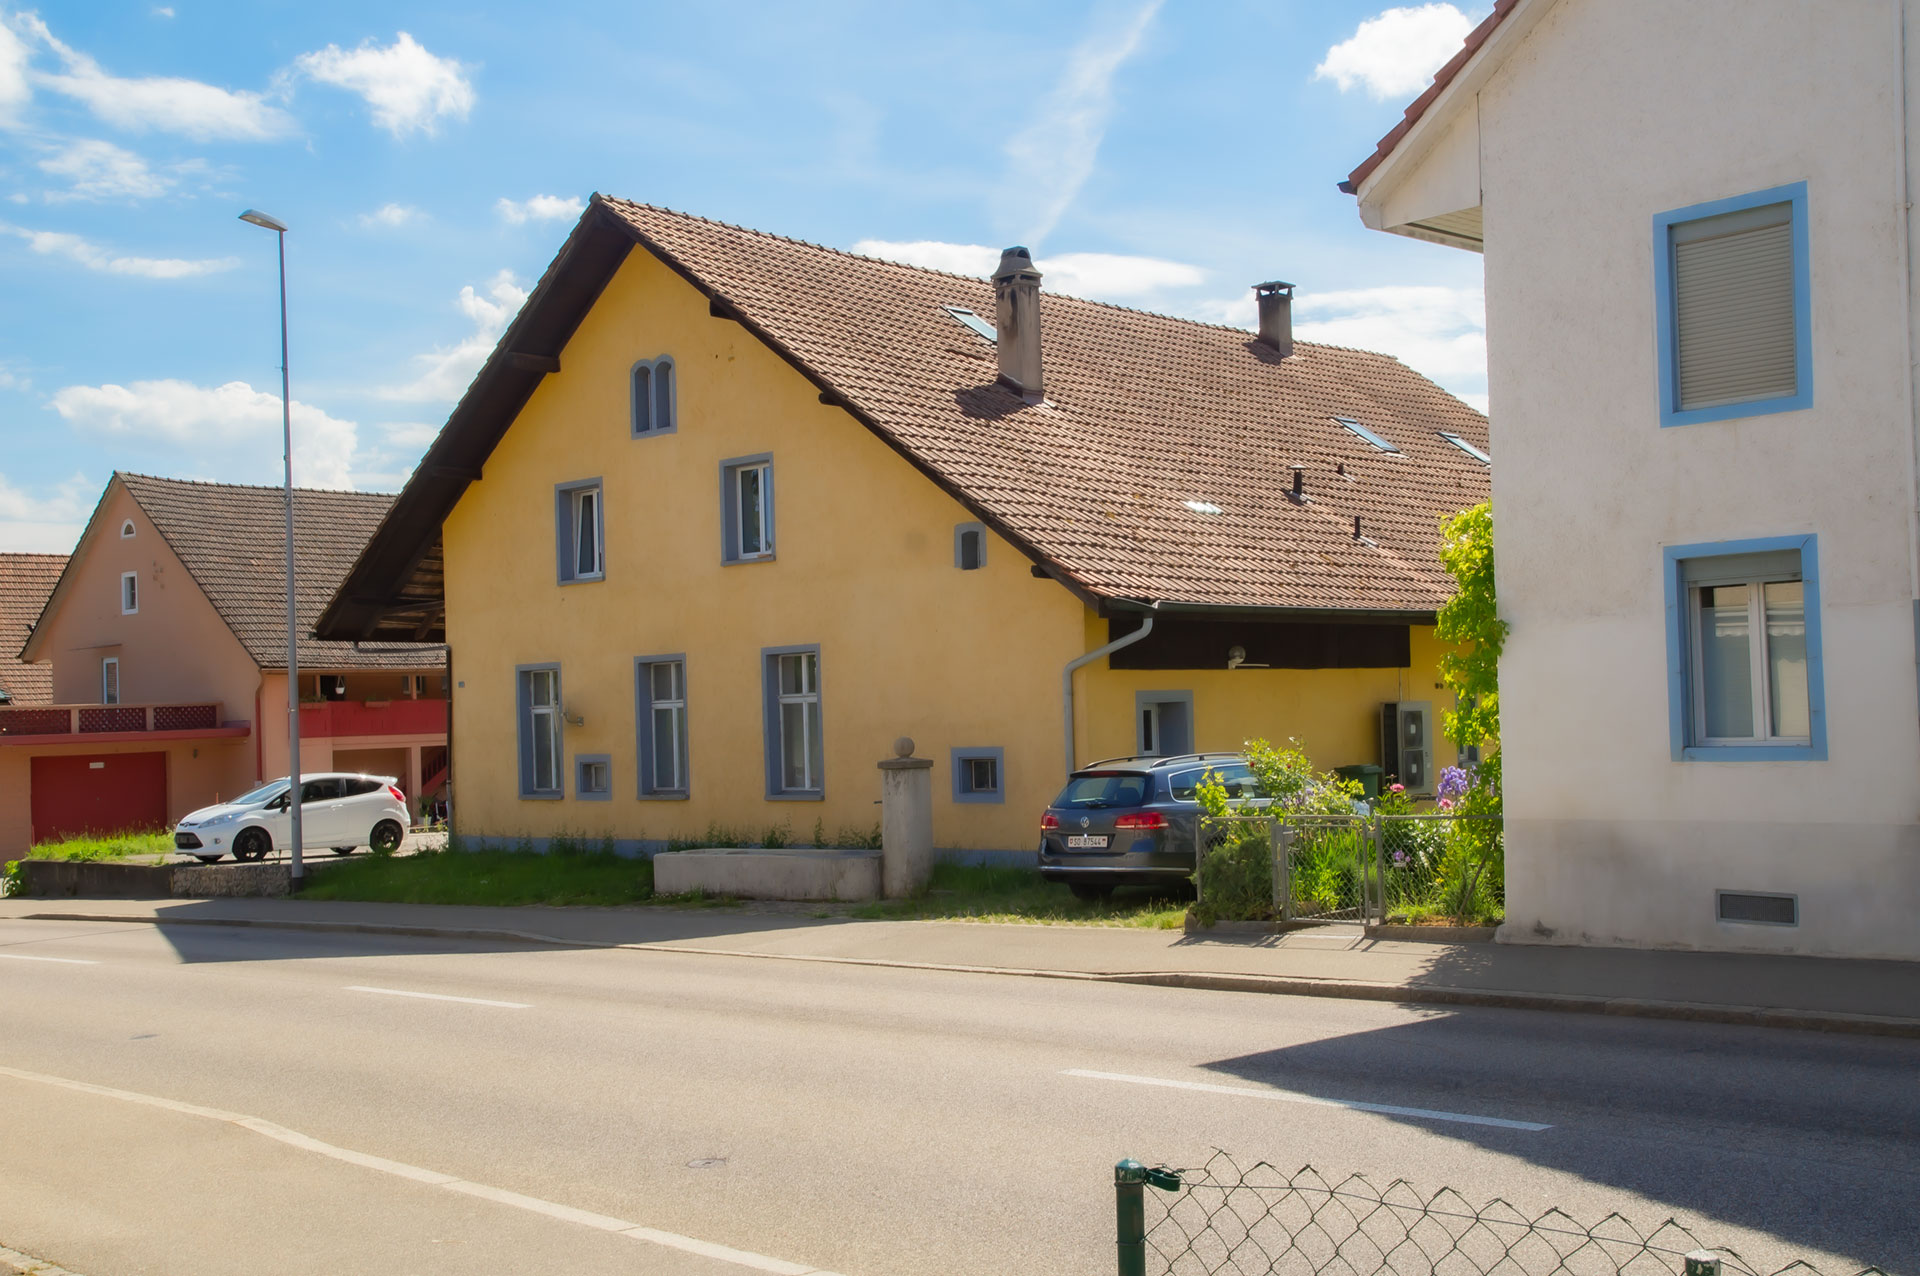 Liegenschaft mit Autogarage - Hauptstrasse 47 - Erzbach Immobilien